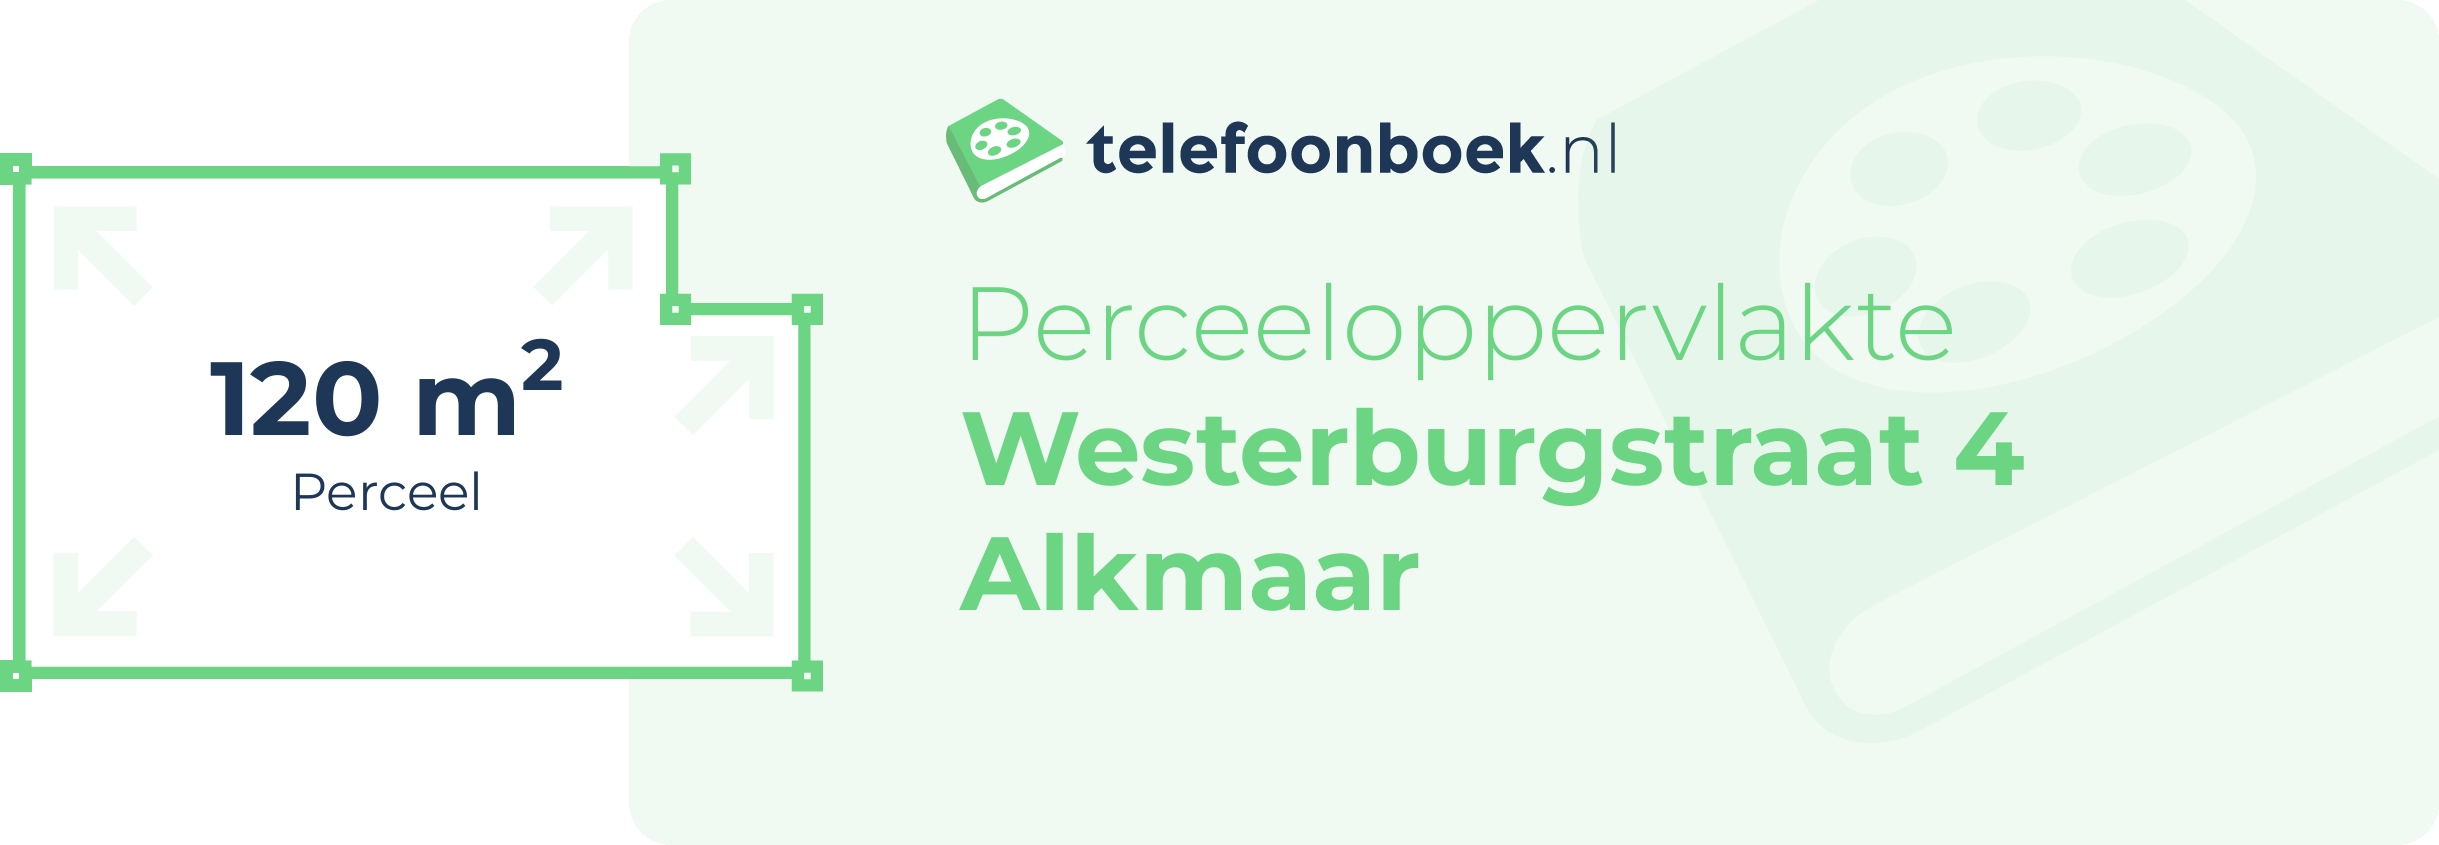 Perceeloppervlakte Westerburgstraat 4 Alkmaar